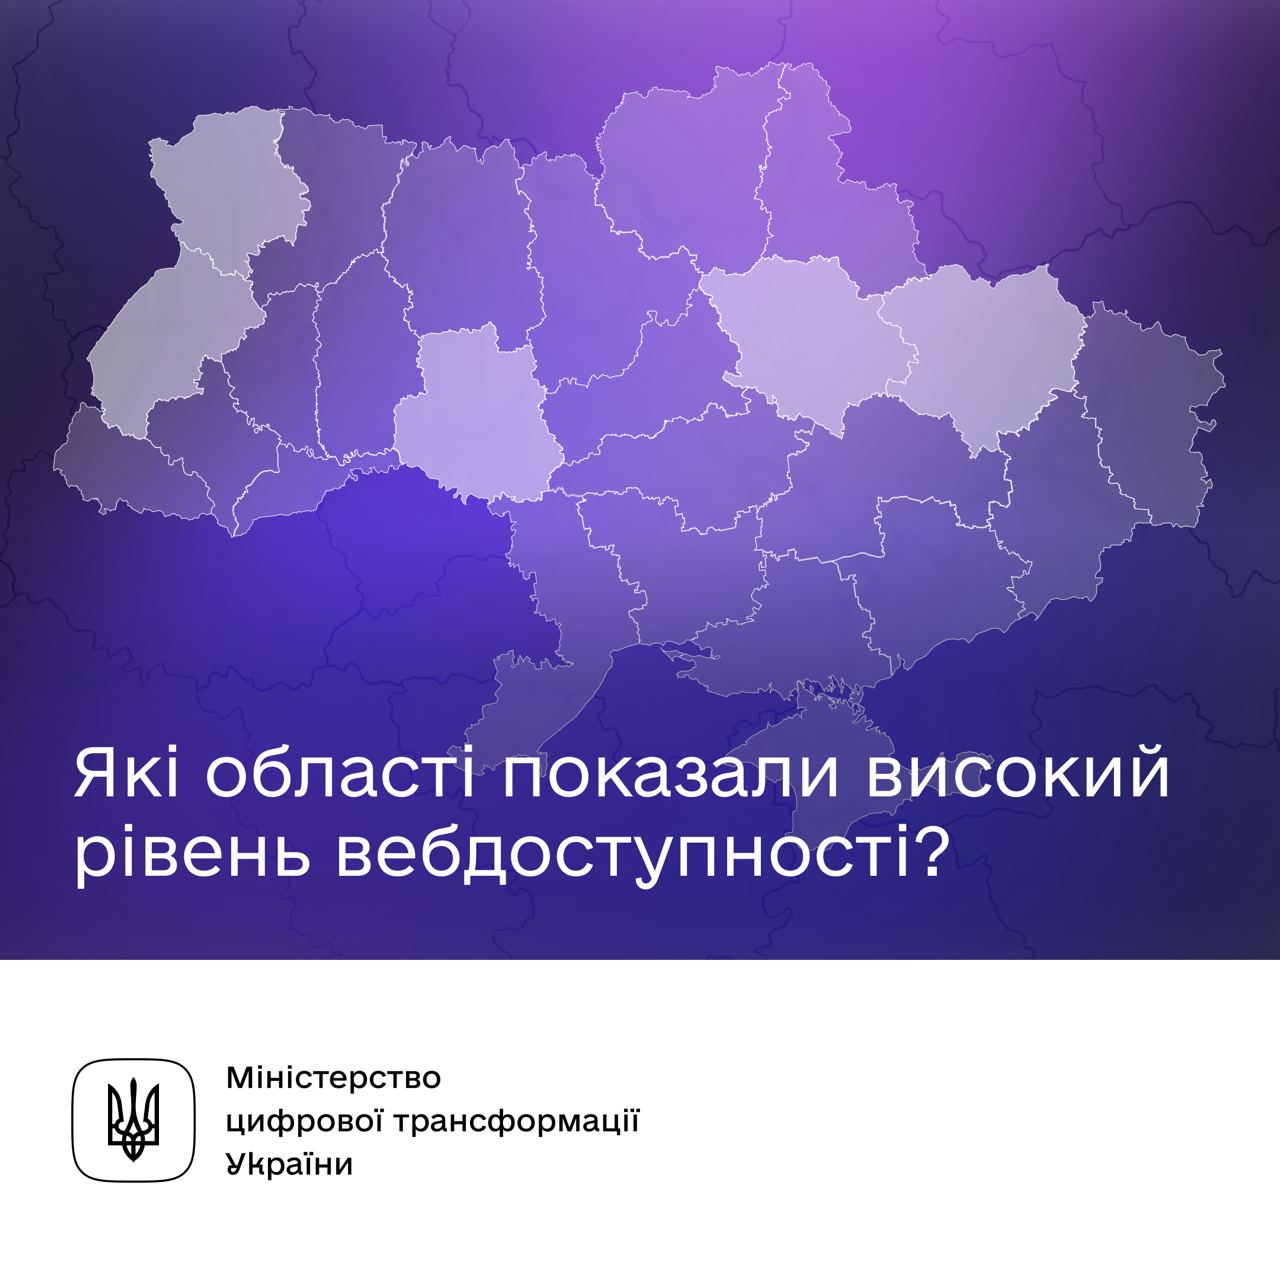 мапа України з написом "Які області показали високий рівень вебдоступності?" та логотипом Мінцифри